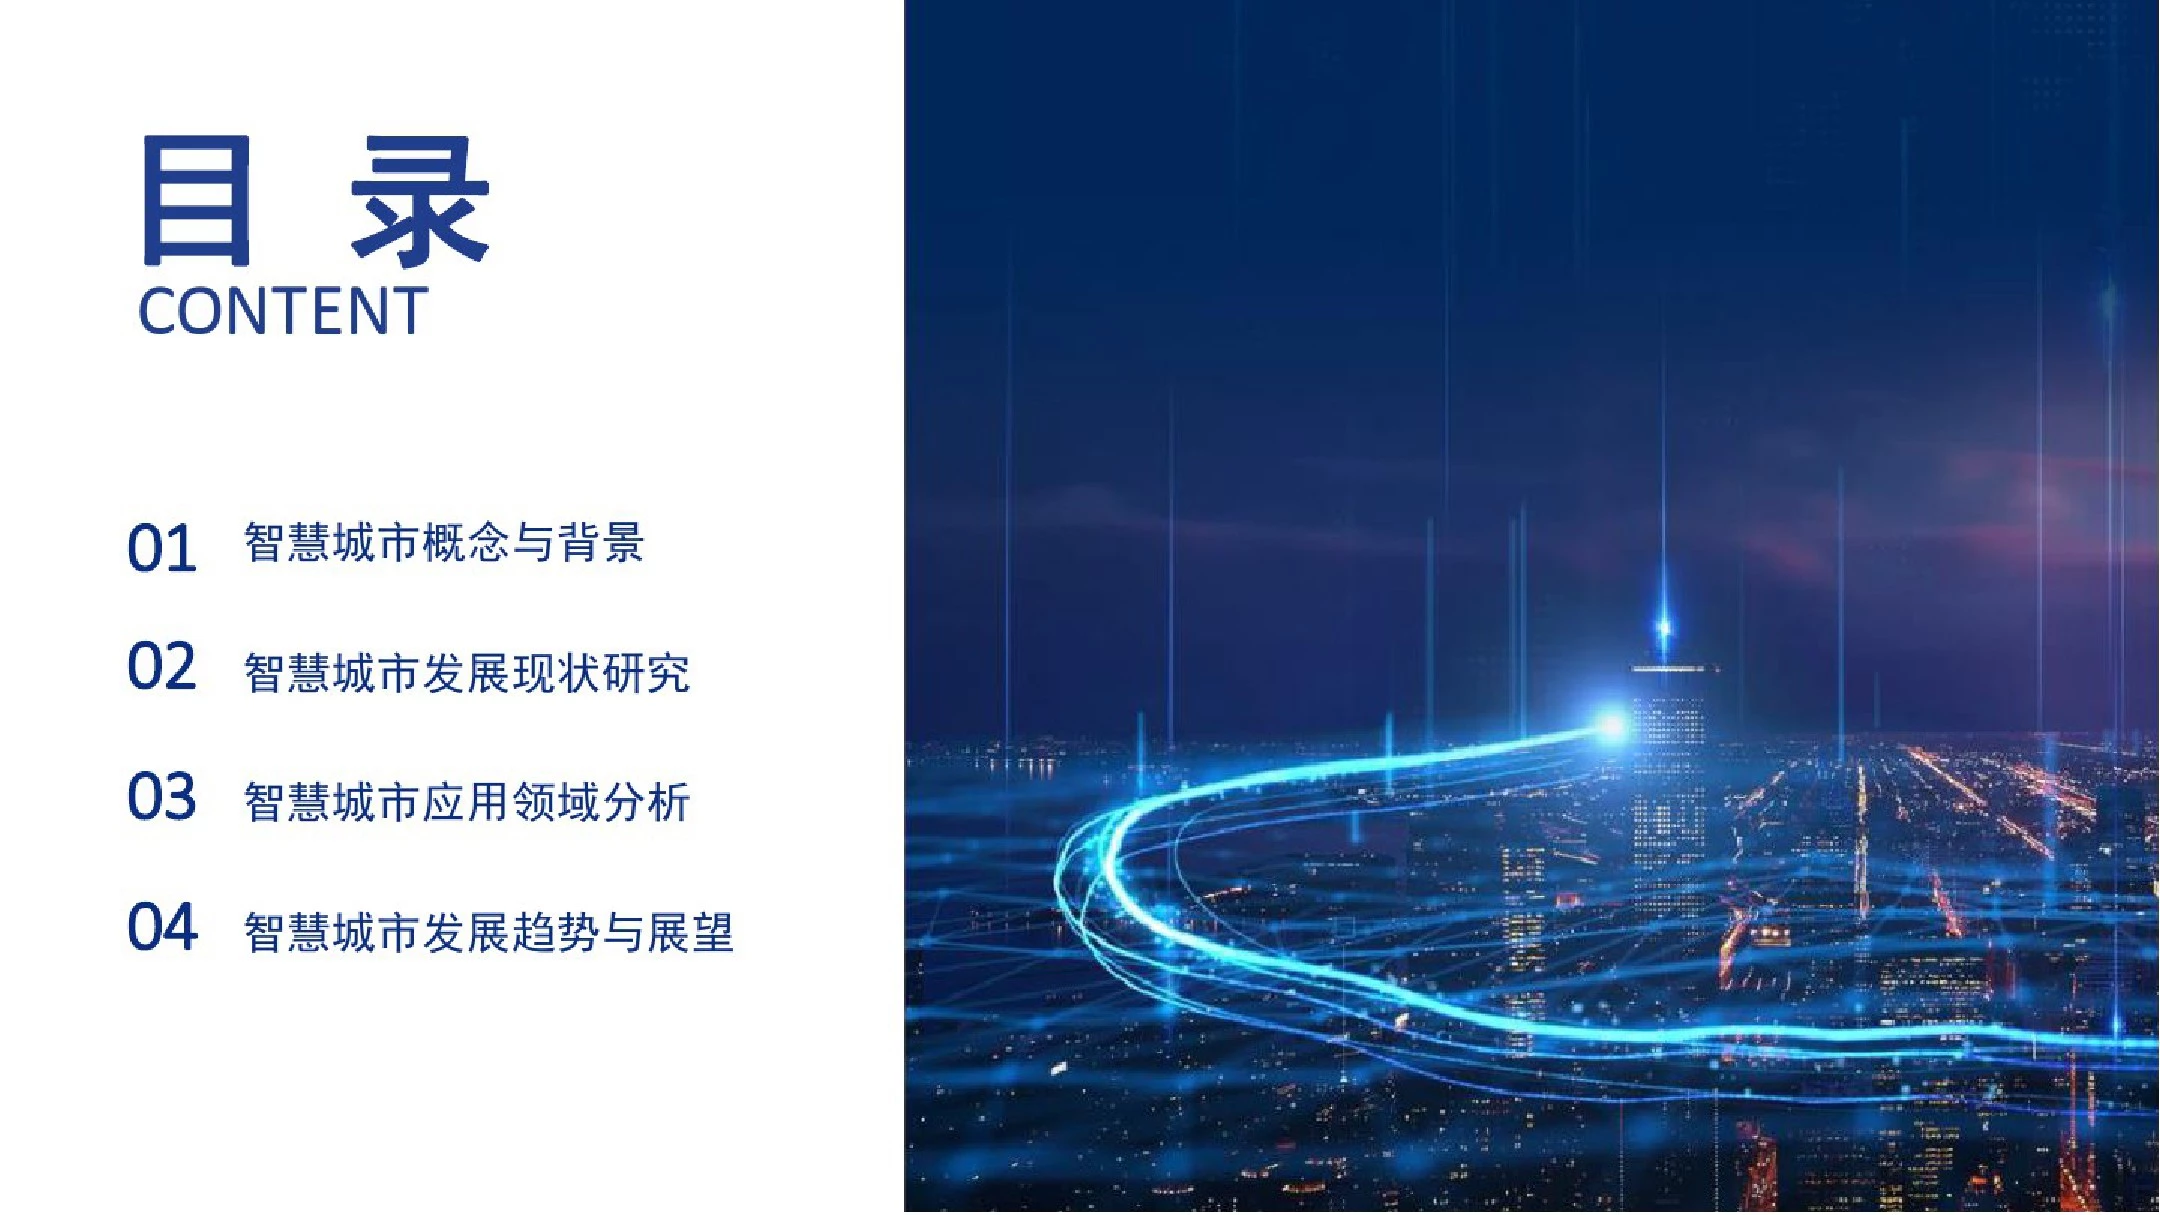 2020年中国智慧城市发展研究报告